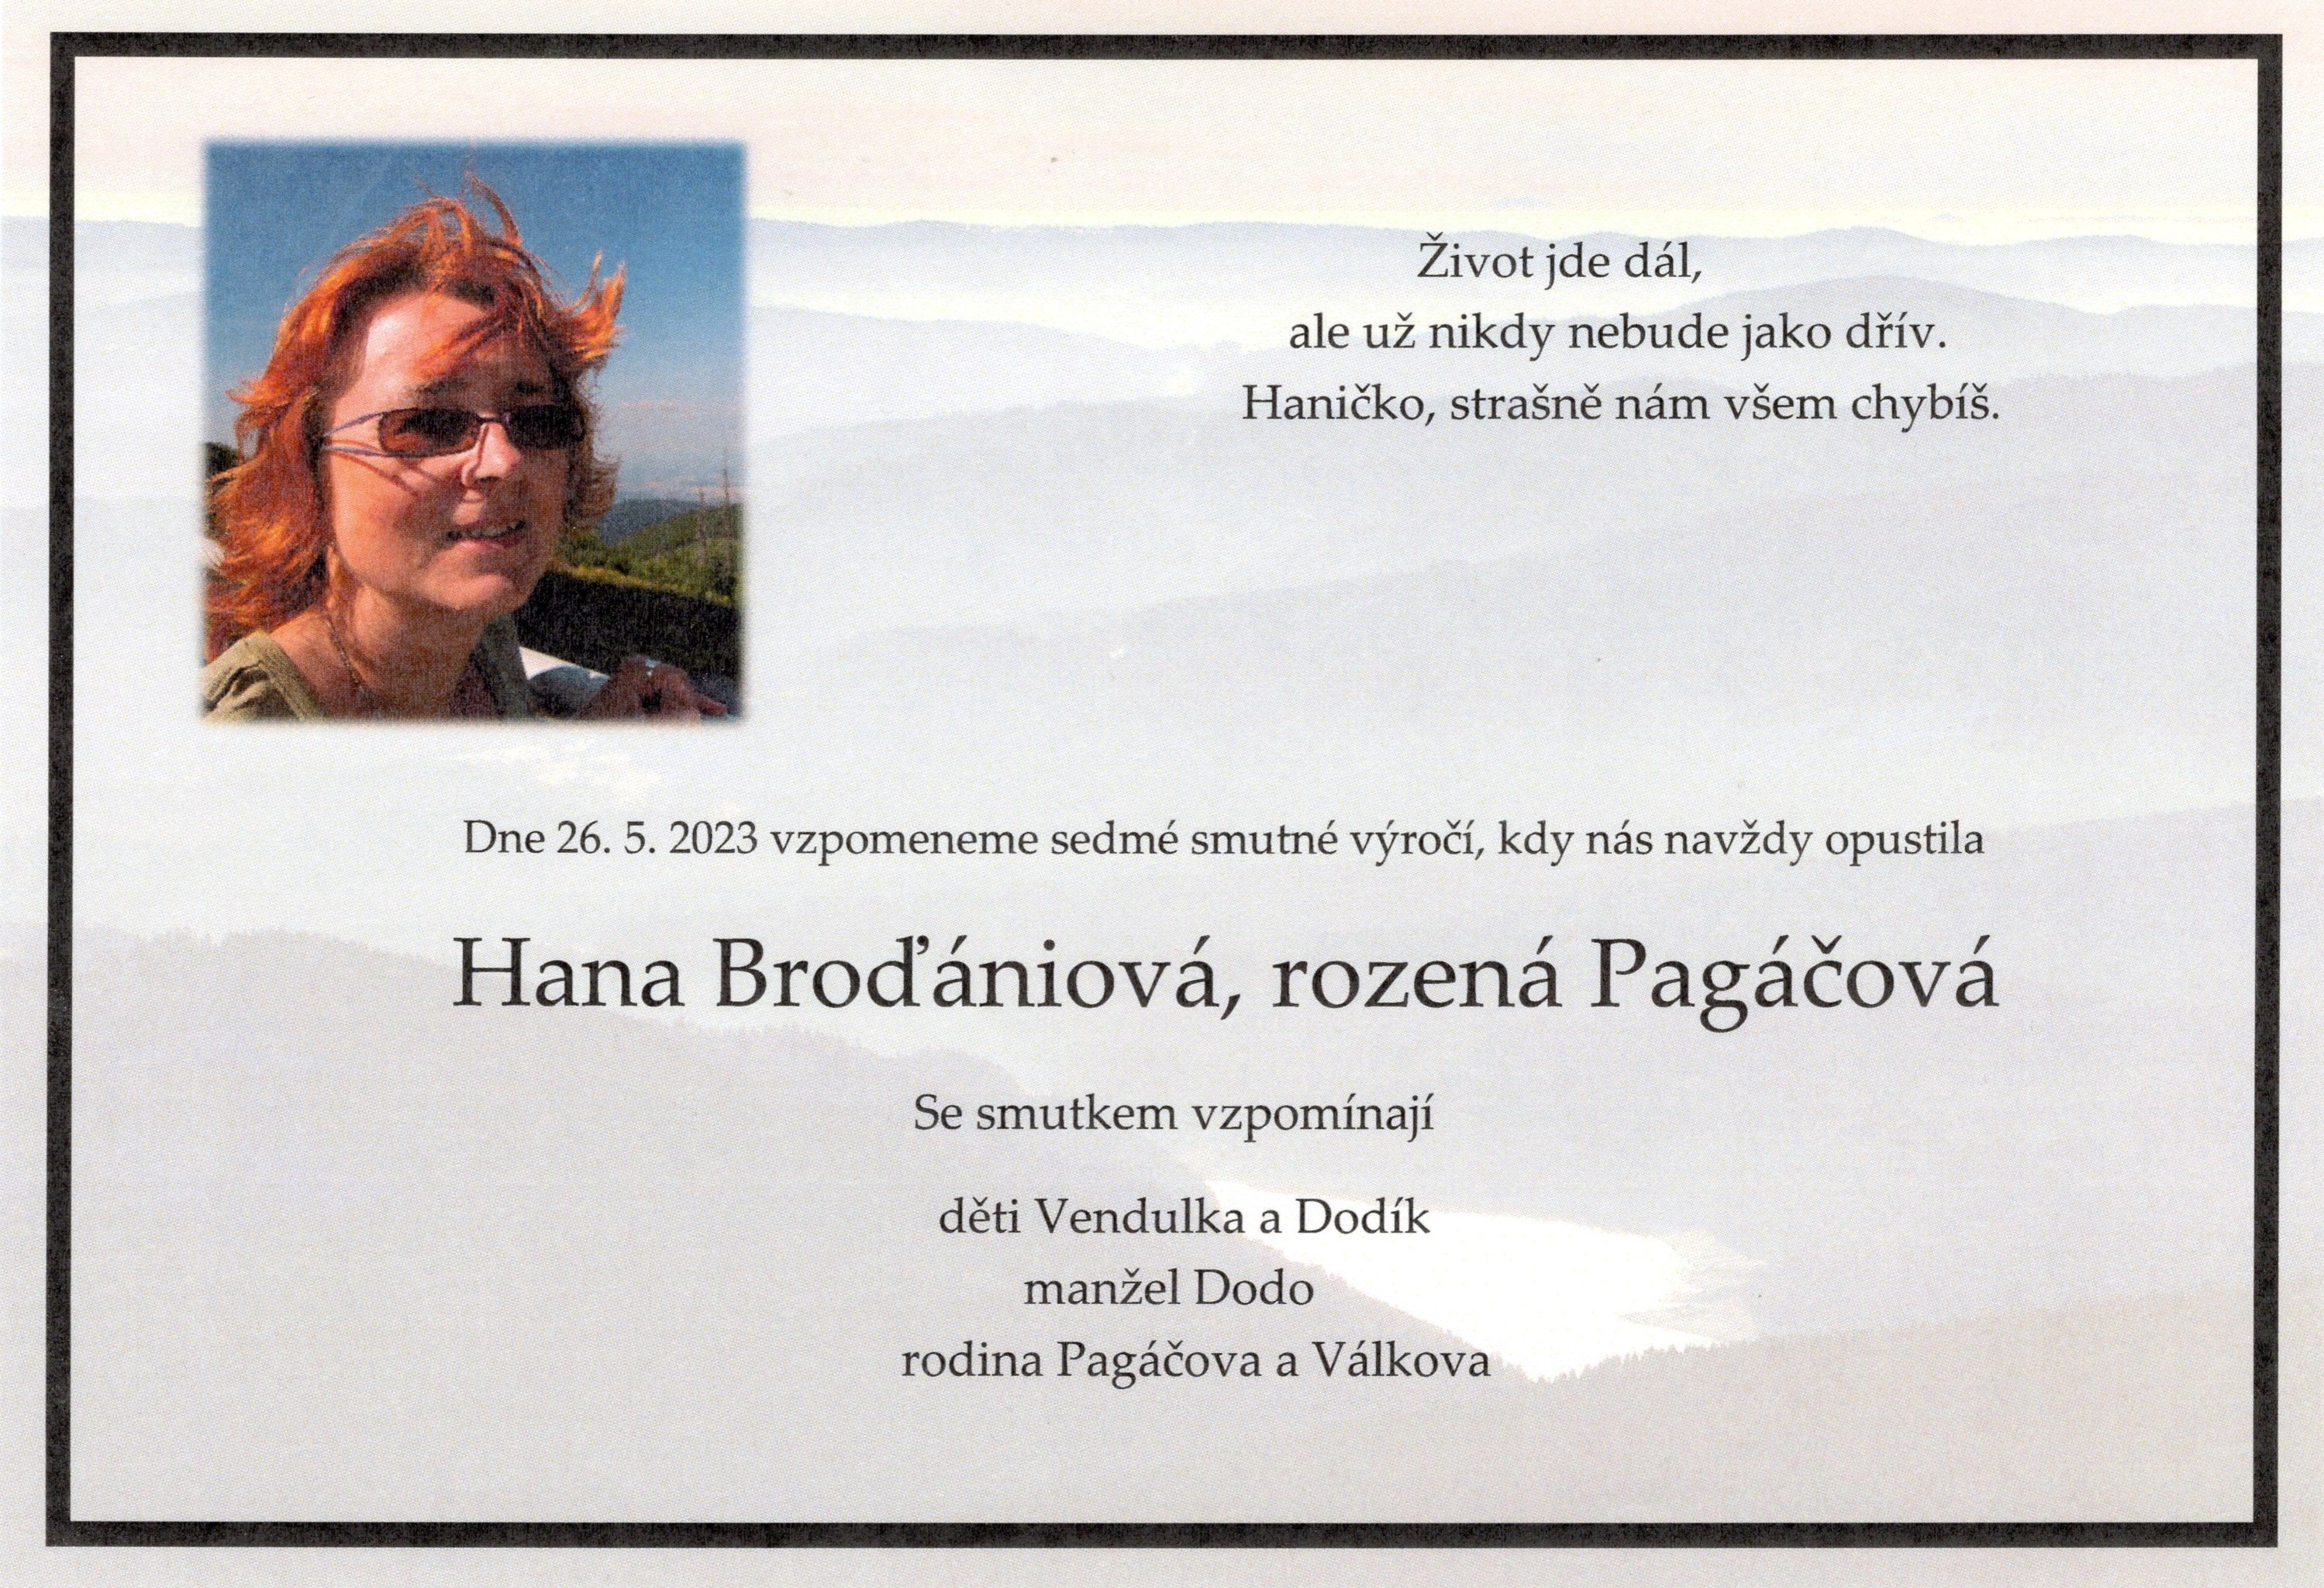 Hana Broďániová